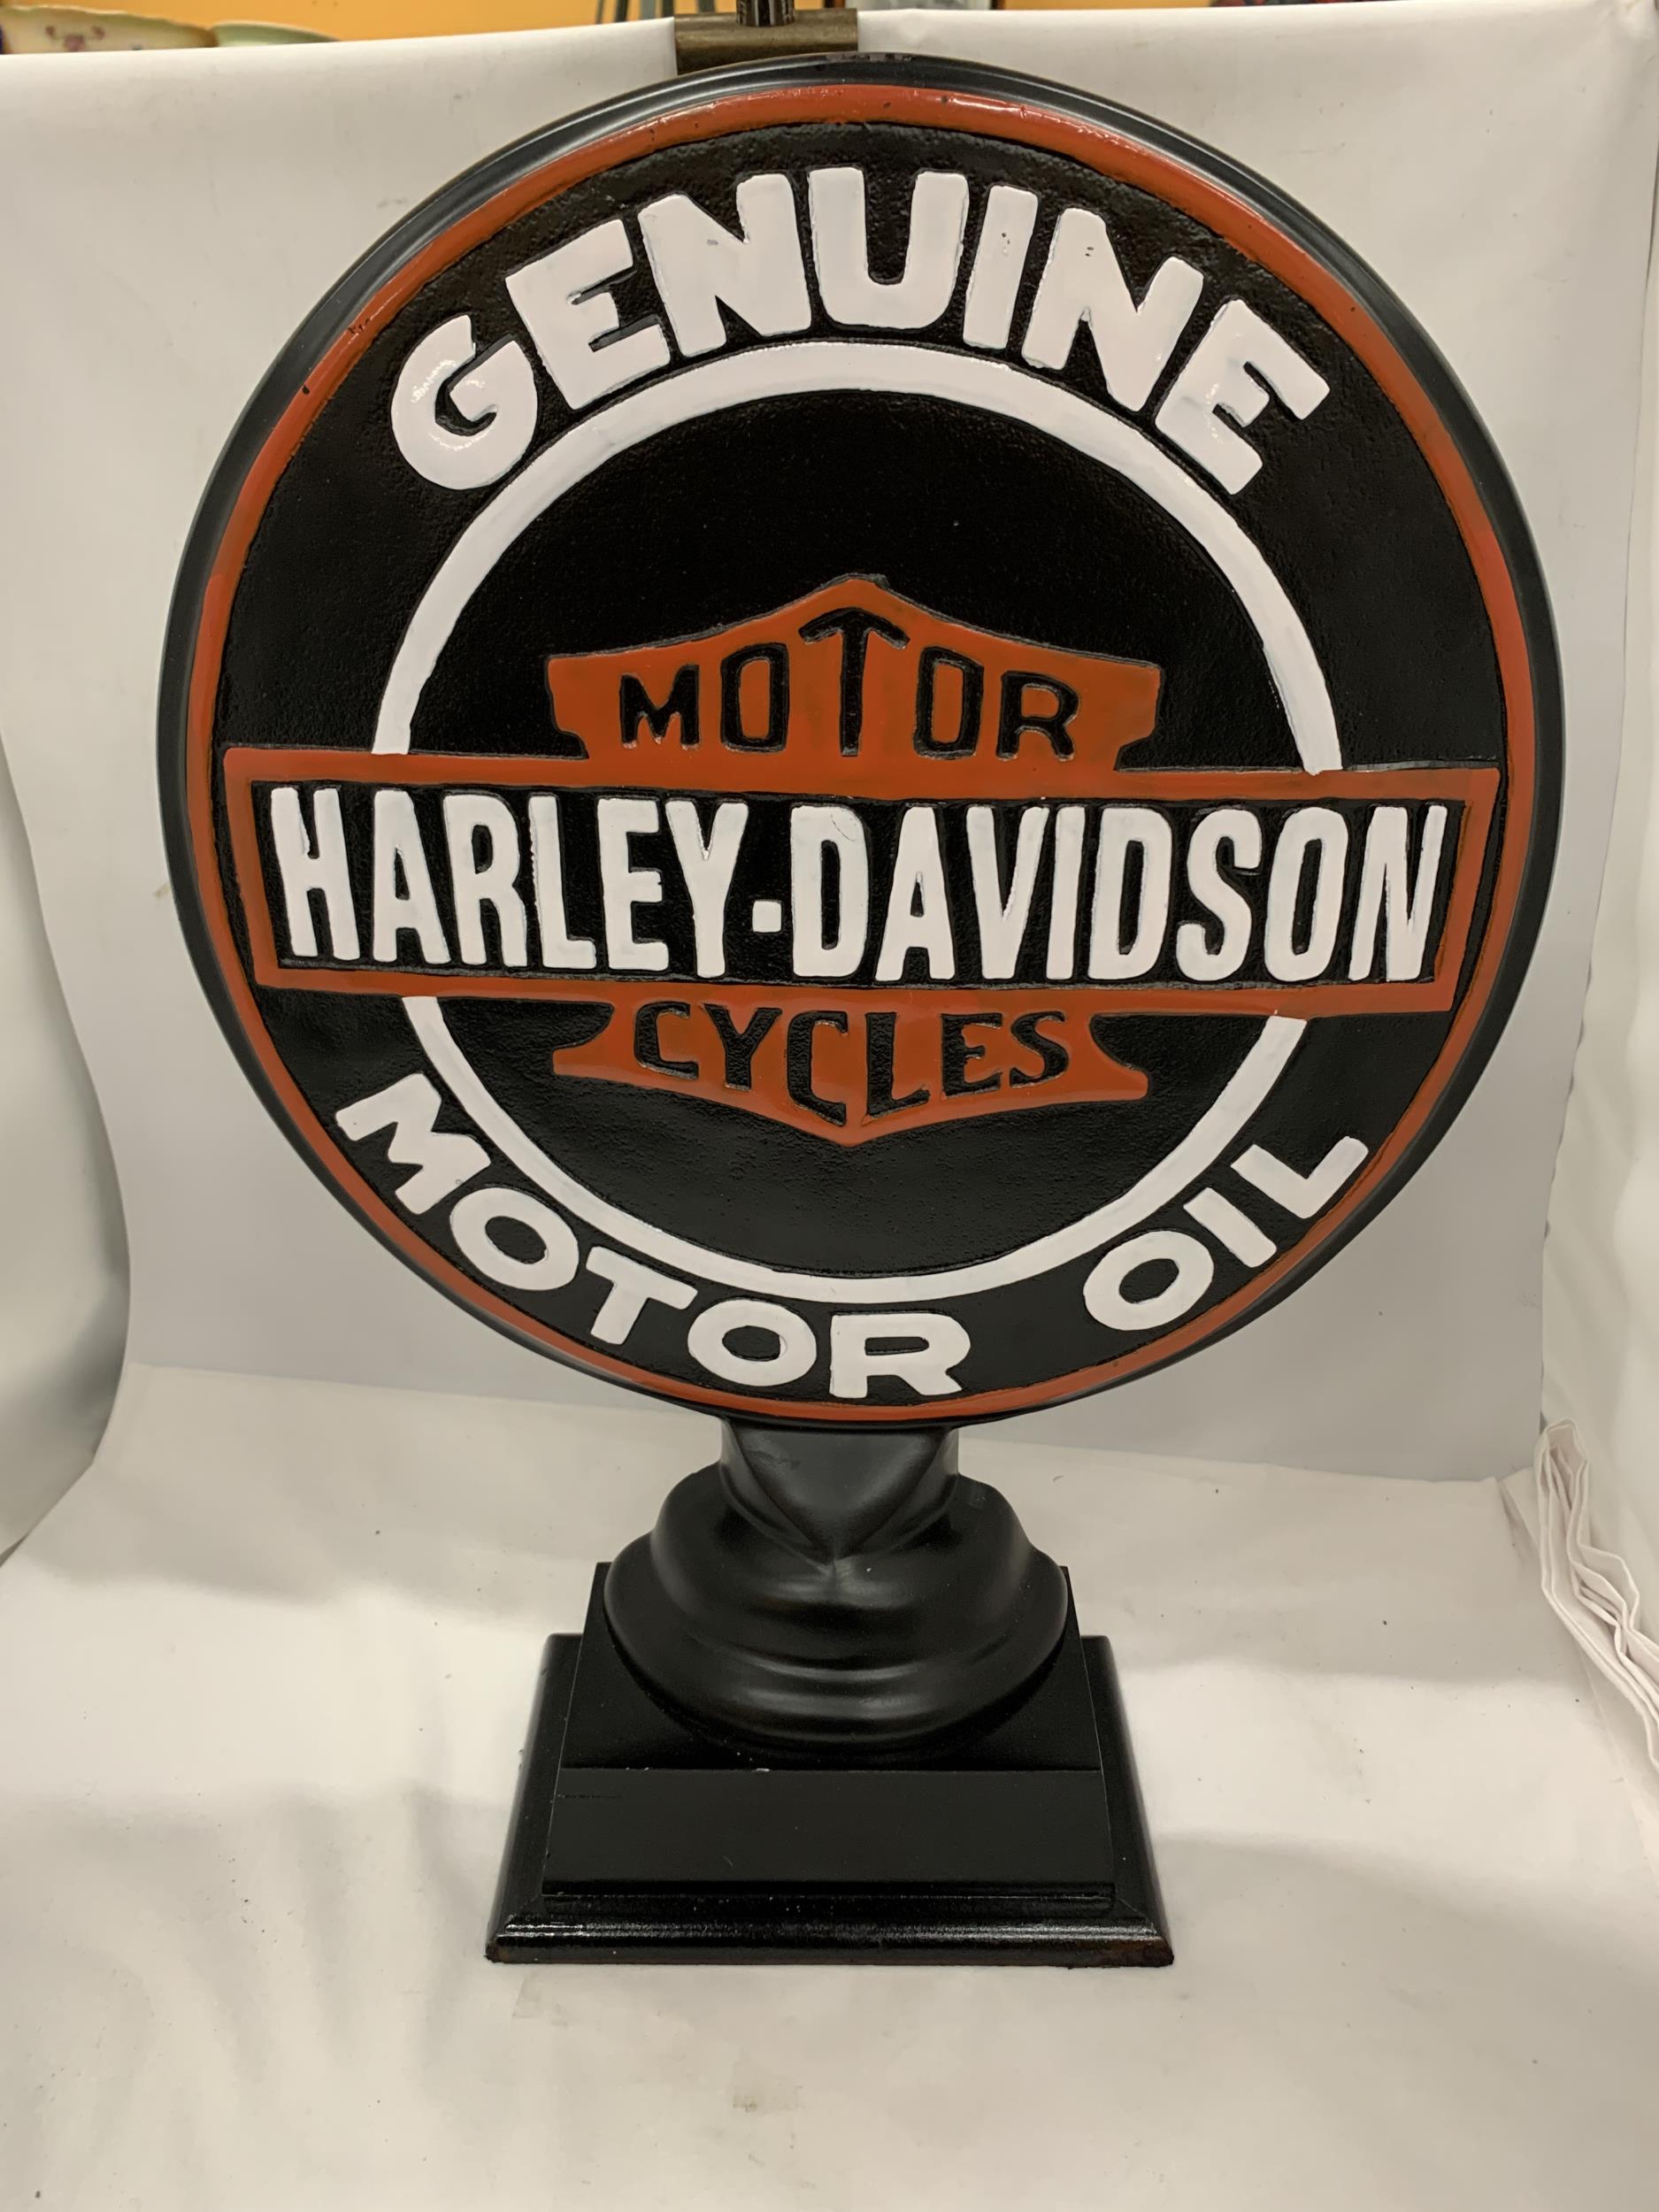 A LARGE CONVEX STEEL HARLEY DAVIDSON MOTOR OIL SIGN ON PEDESTAL, 21" HIGH